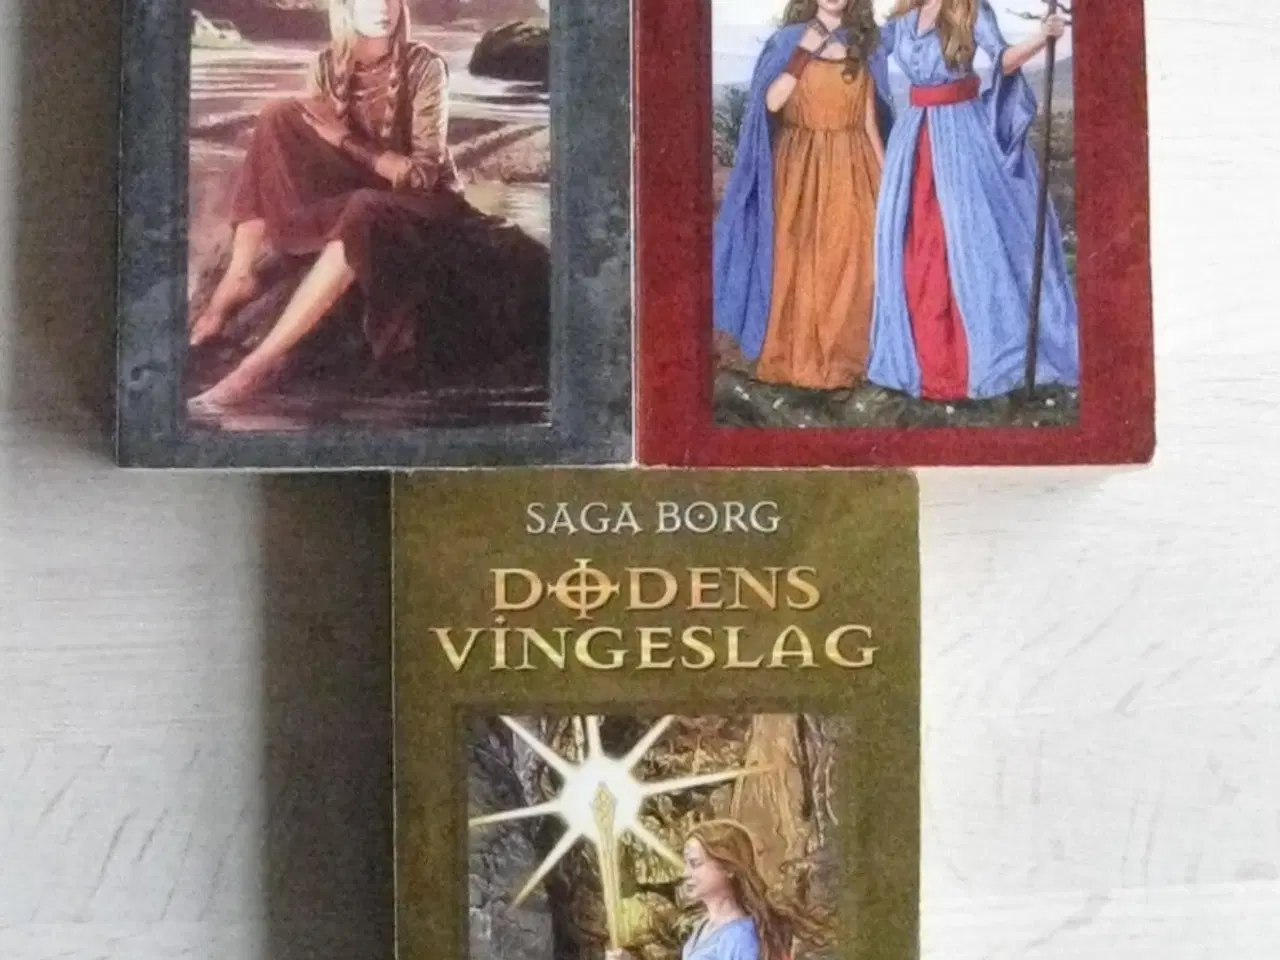 Billede 2 - "Jarastavens vandring" af Saga Borg bind 1-9 ;-)